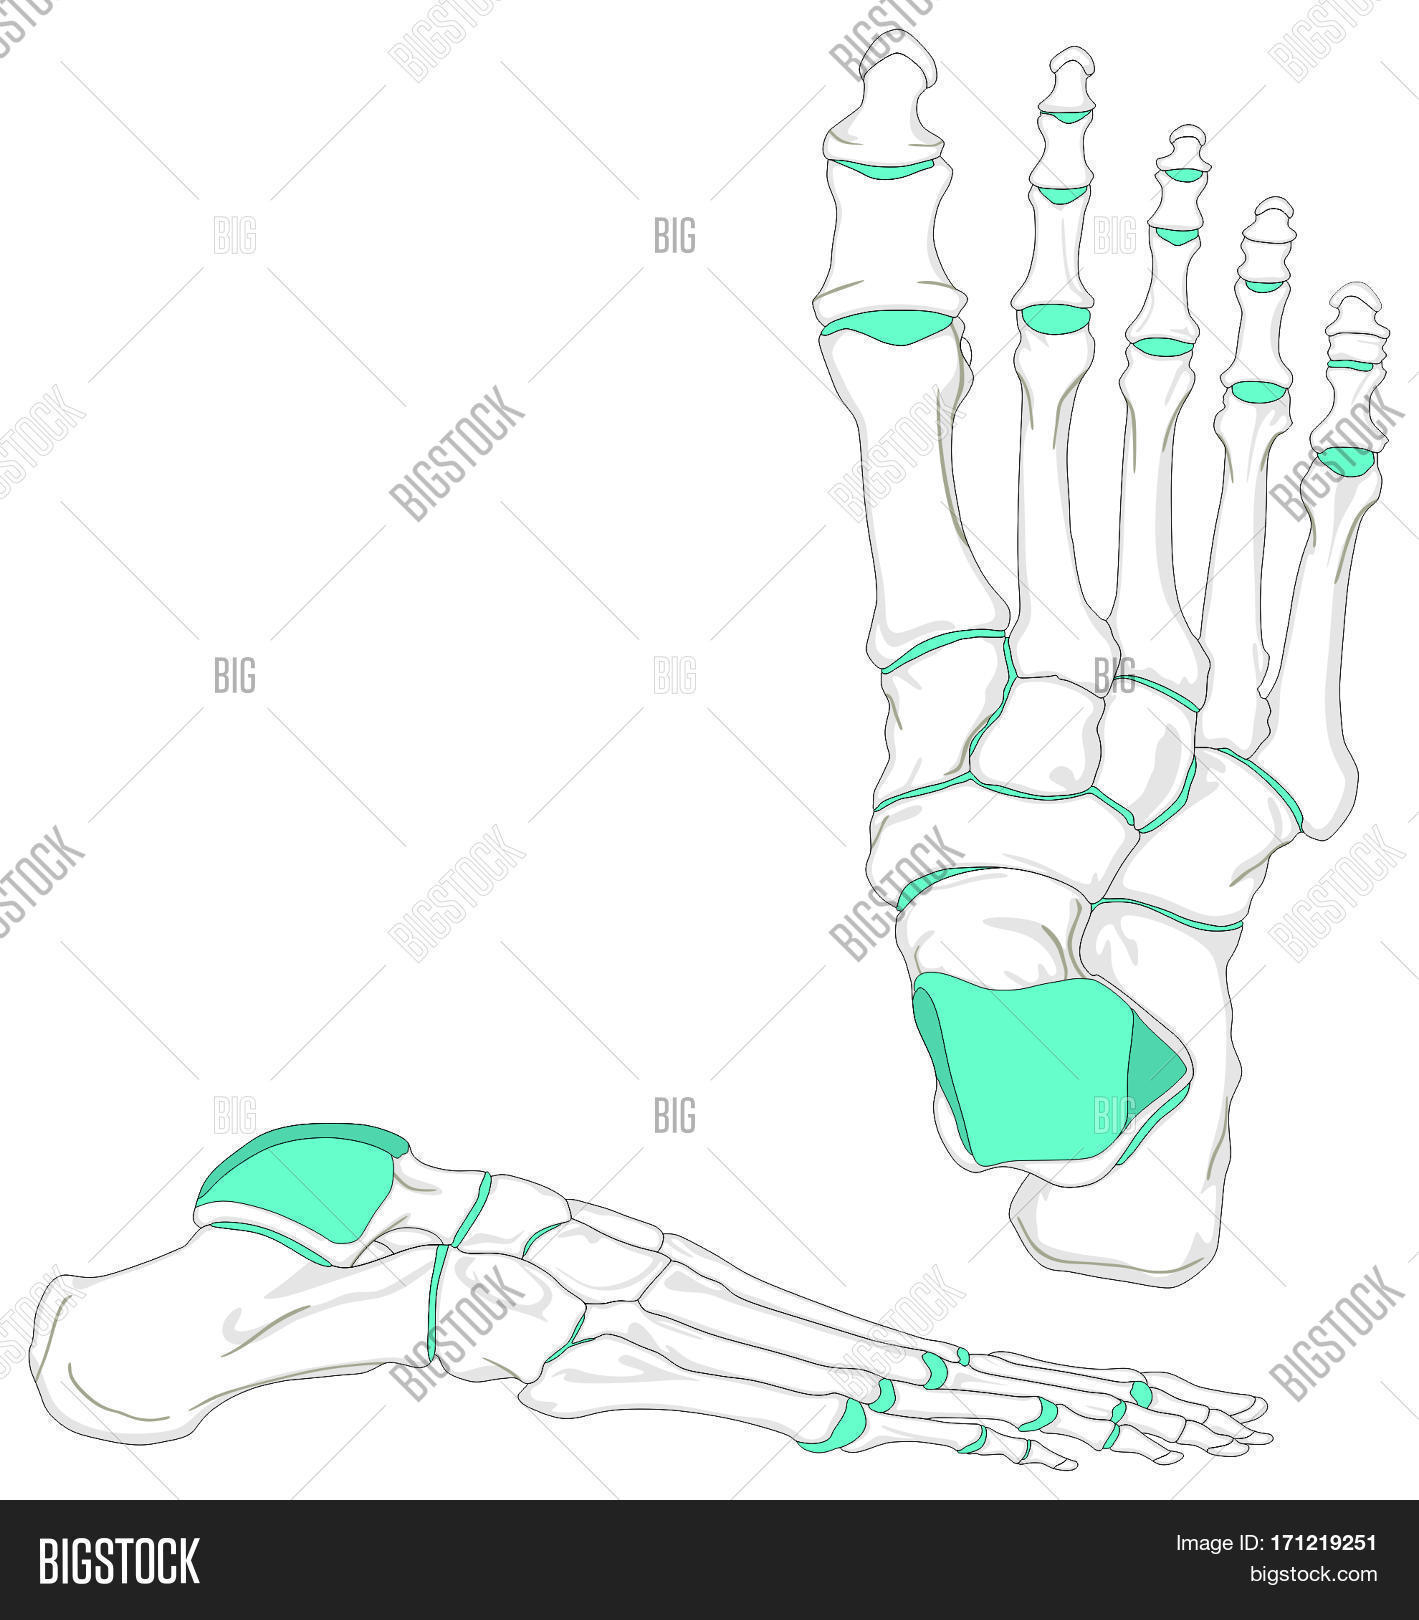 Foot Bones Diagram Human Foot Bones Image Photo Free Trial Bigstock